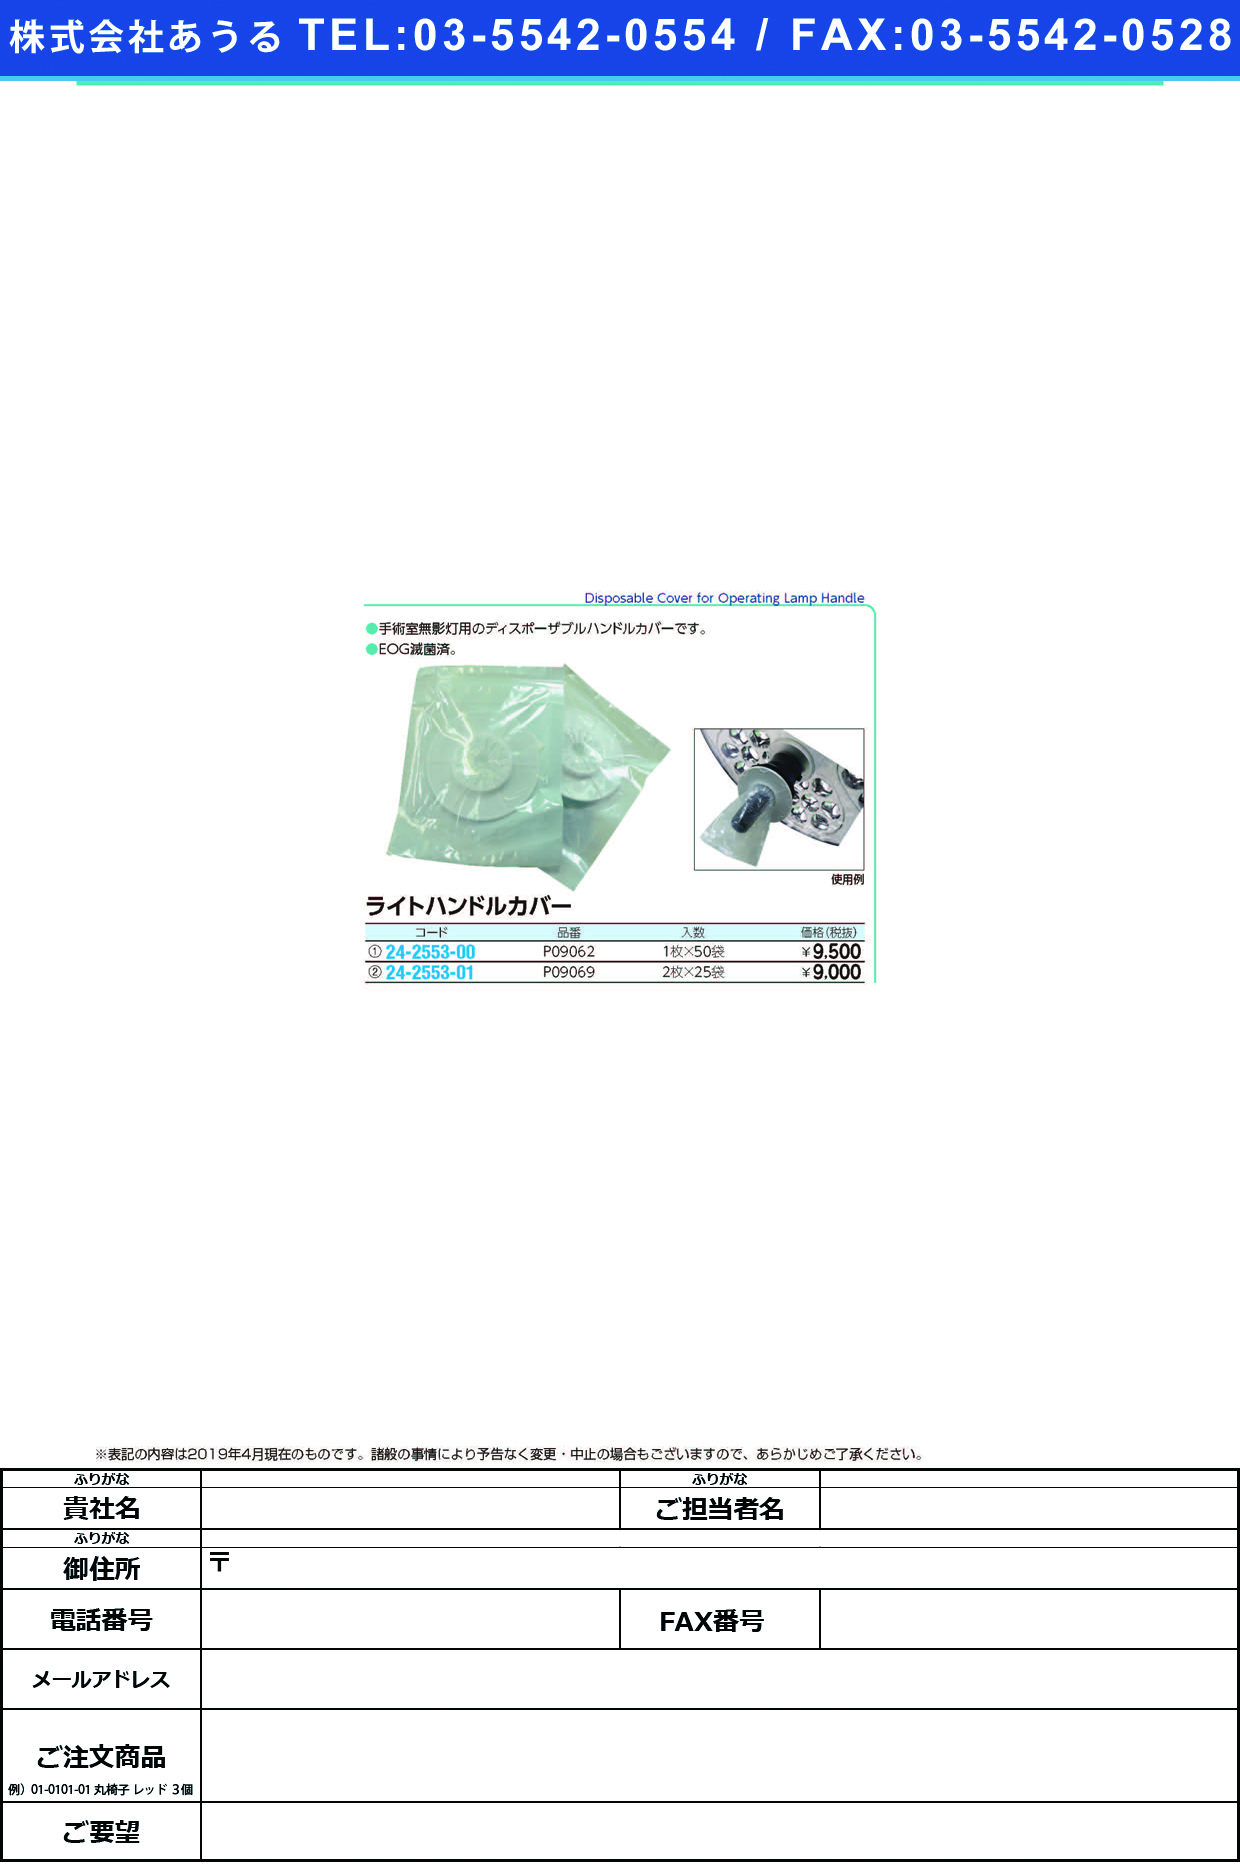 (24-2553-01)ライトハンドルカバー P09069(2ﾏｲX25ﾌｸﾛ) ﾗｲﾄﾊﾝﾄﾞﾙｶﾊﾞｰ【1箱単位】【2019年カタログ商品】